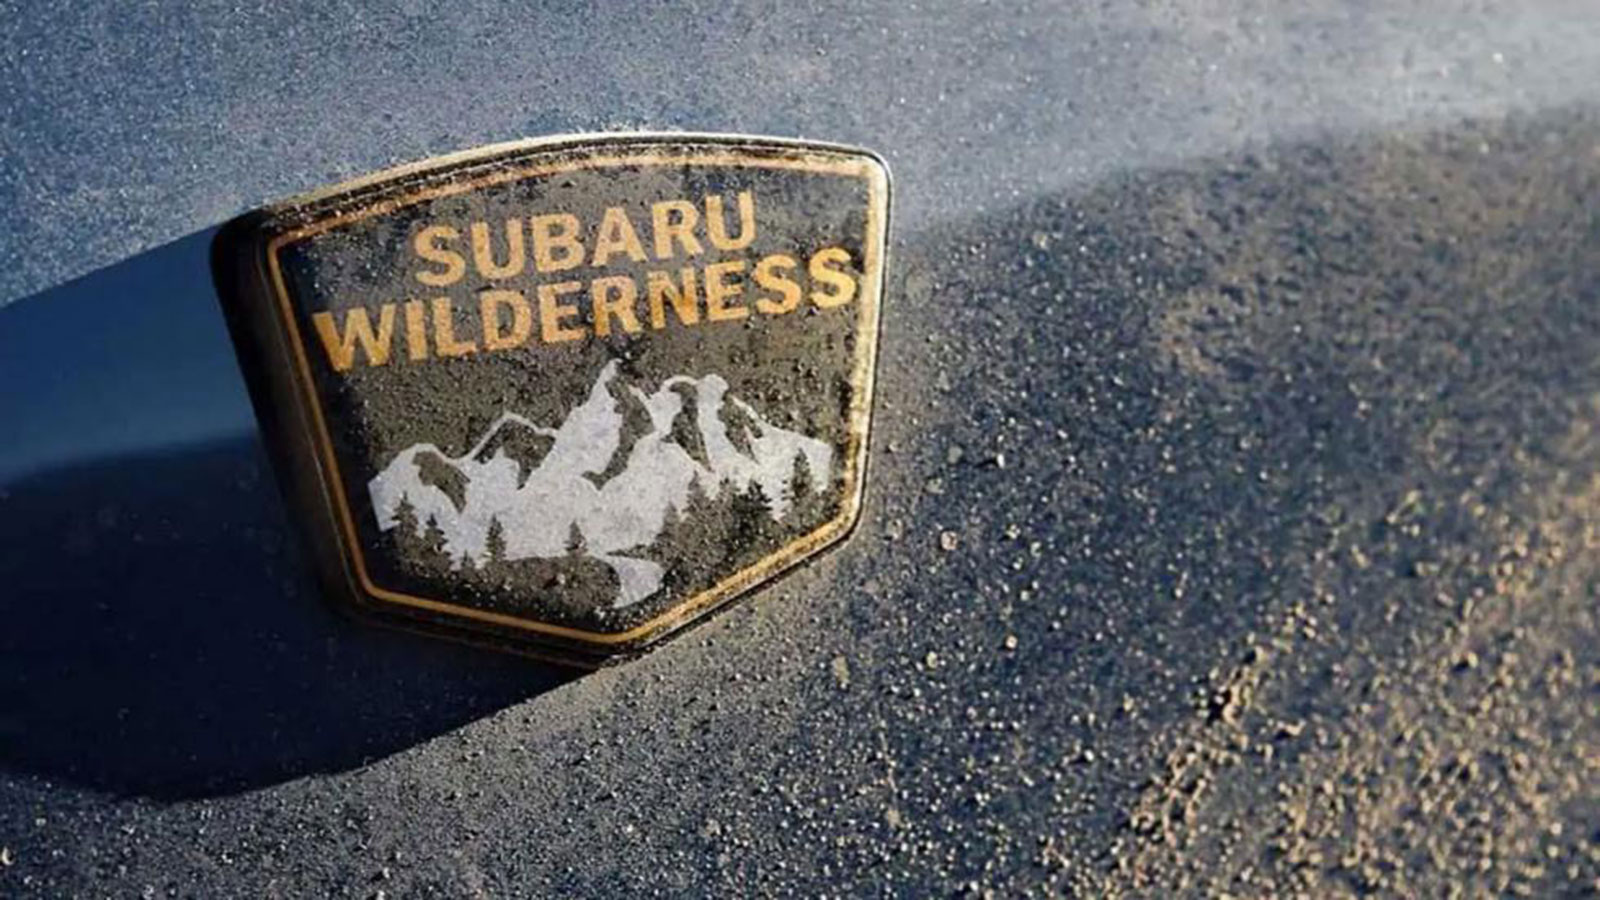 Έτοιμο το νέο Wilderness μοντέλο της Subaru